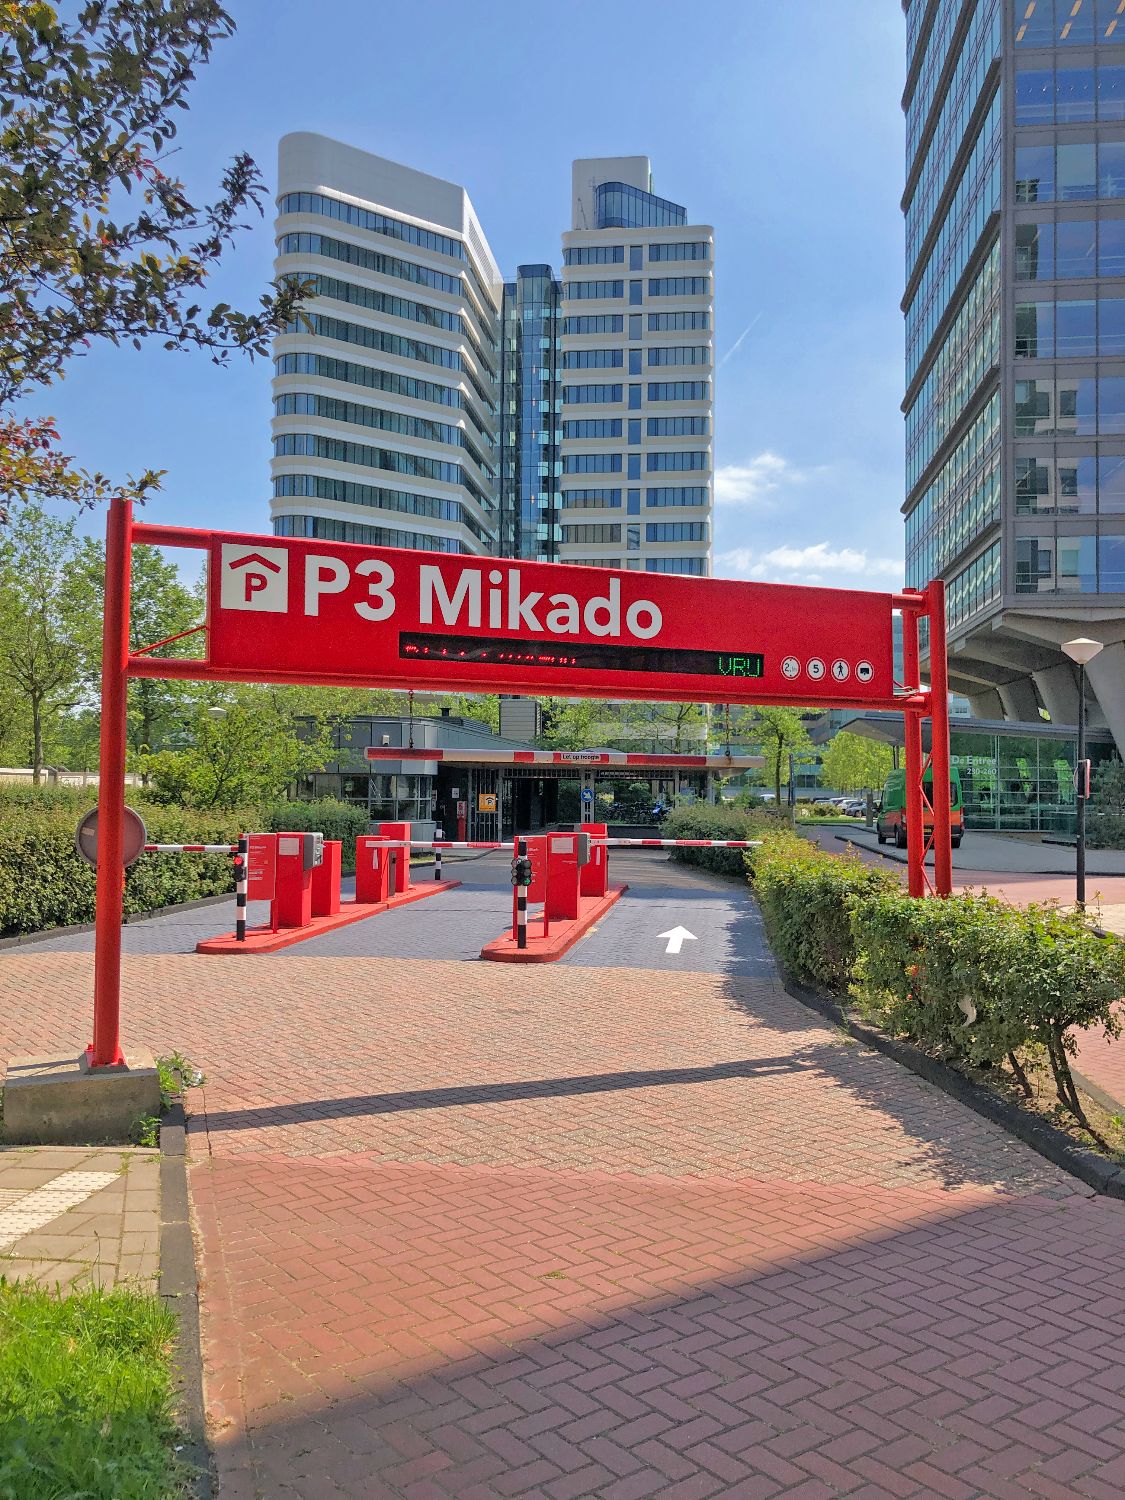 Inrit parkeergarage P3 Mikado Gemeente Amsterdam voorzien van inritportaal en inriteiland in huisstijl.